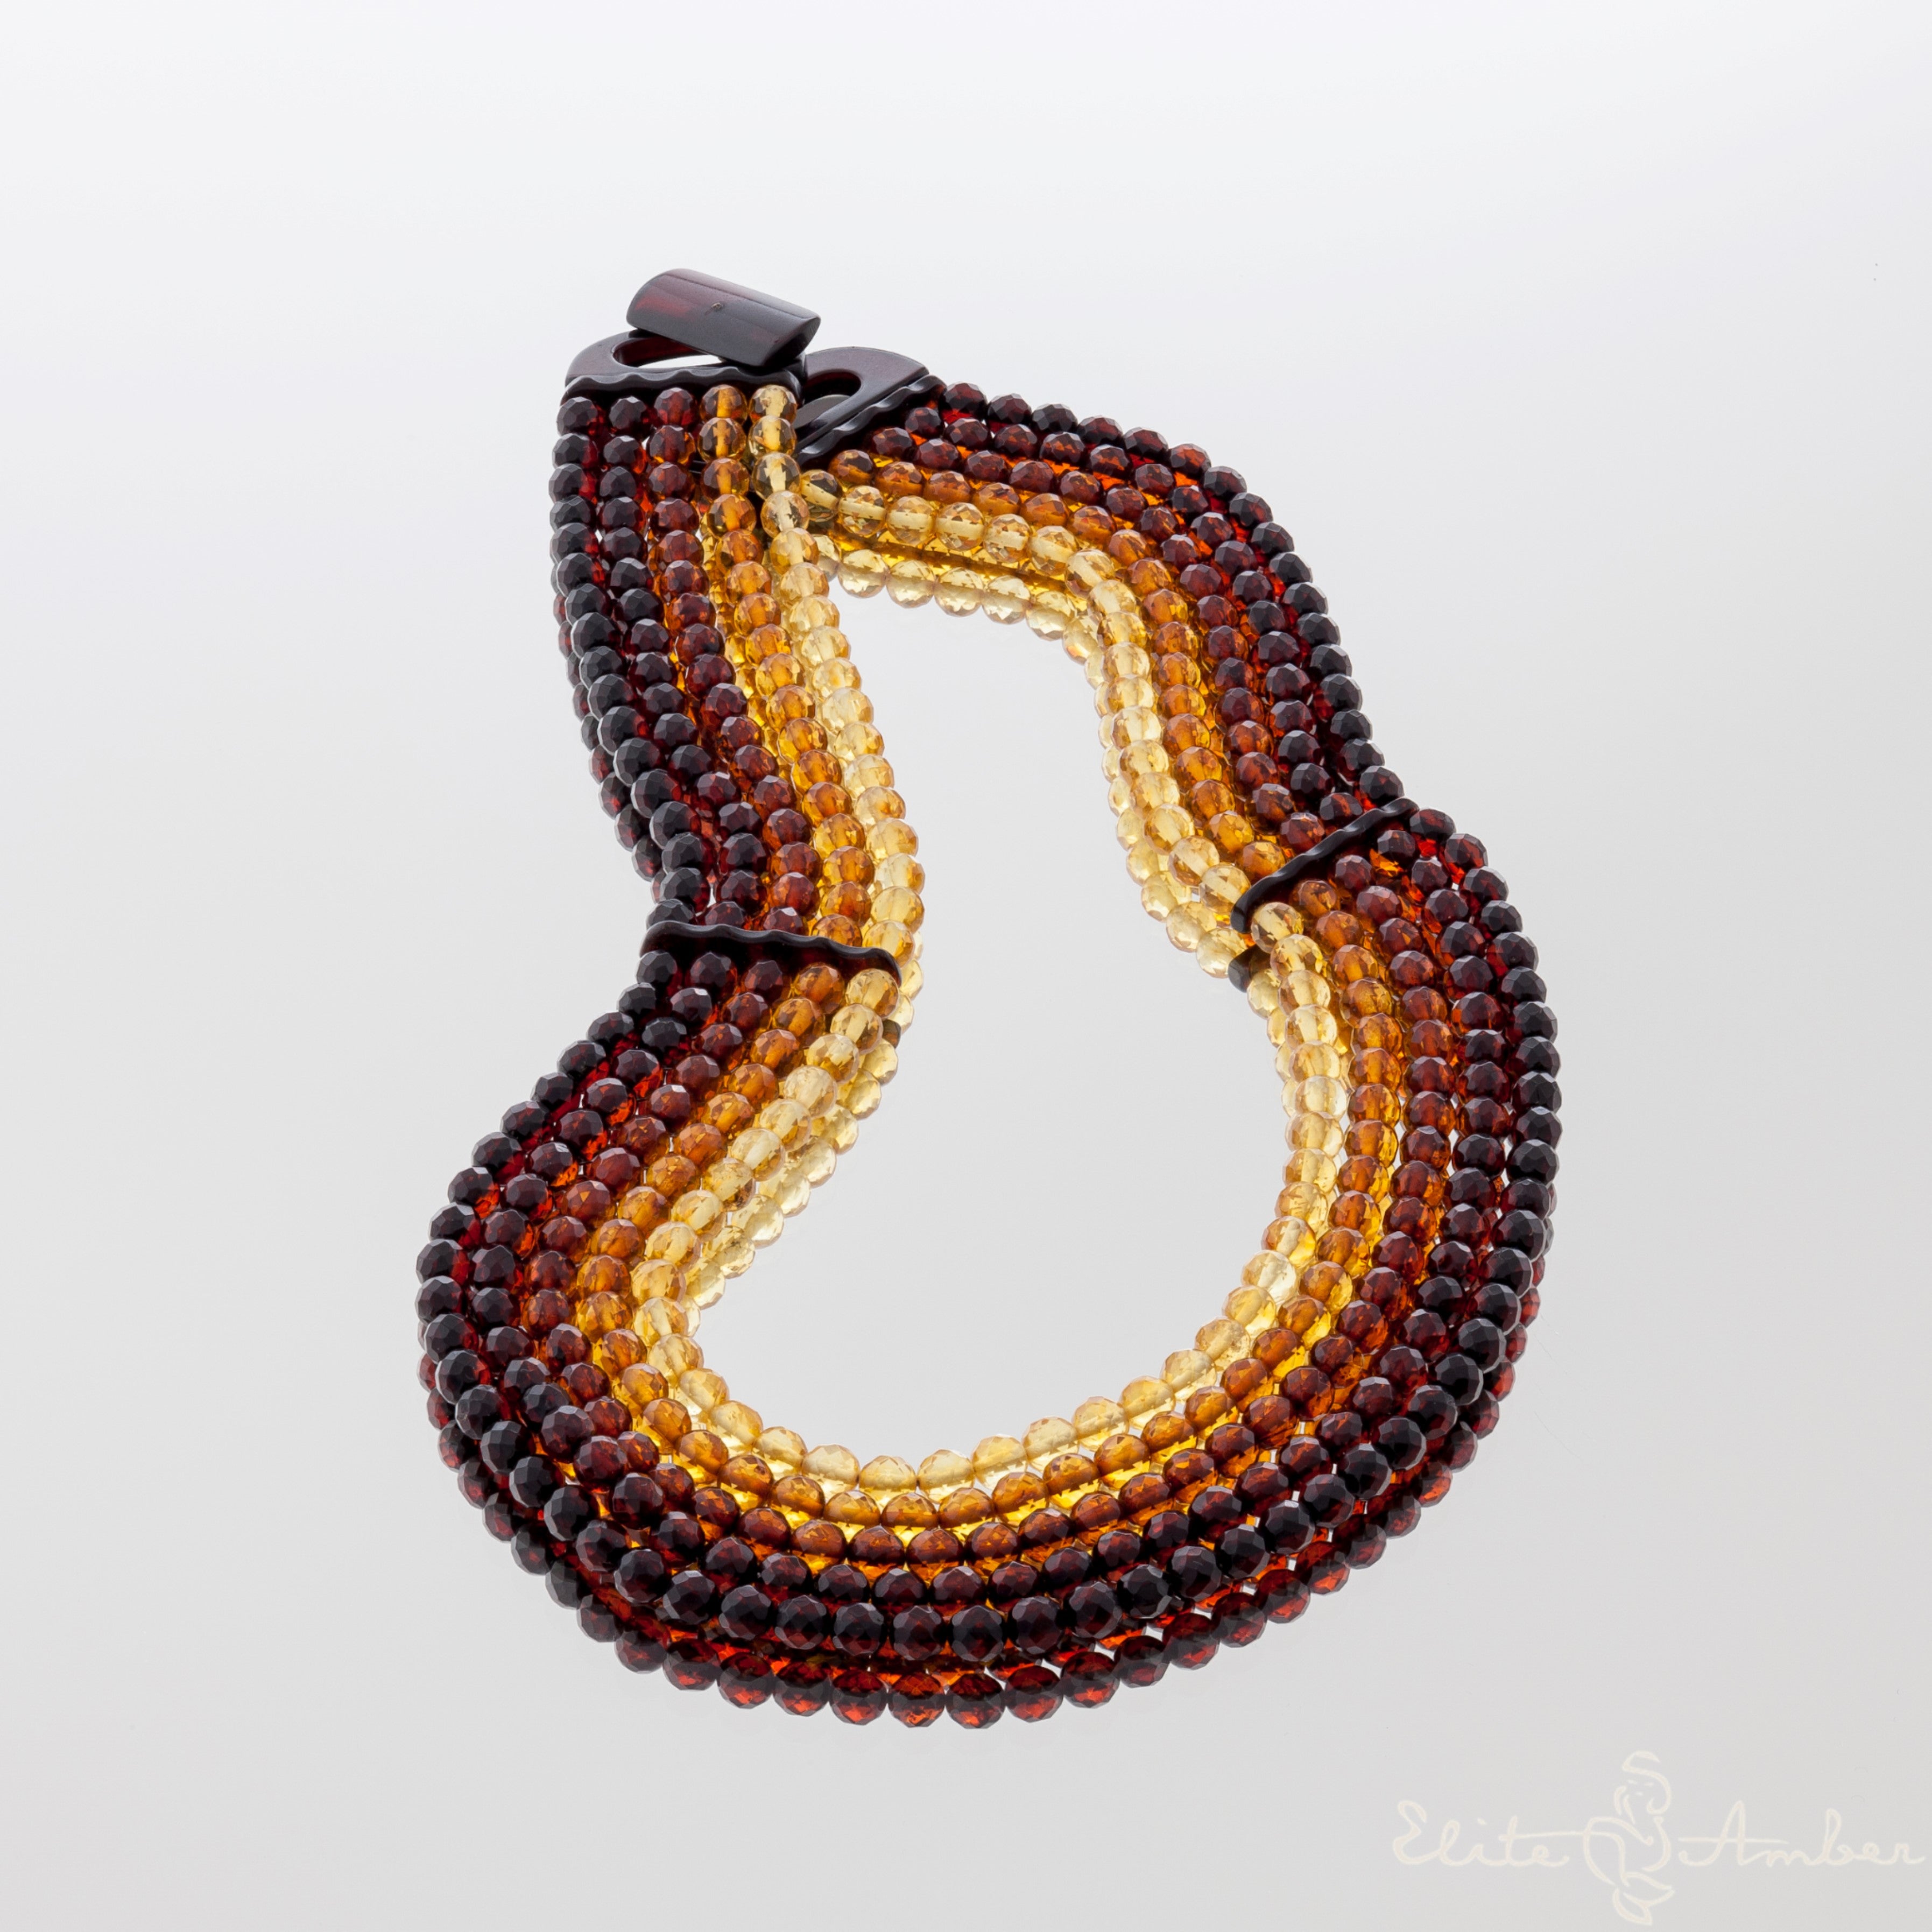 Amber necklace "Queen aurora"